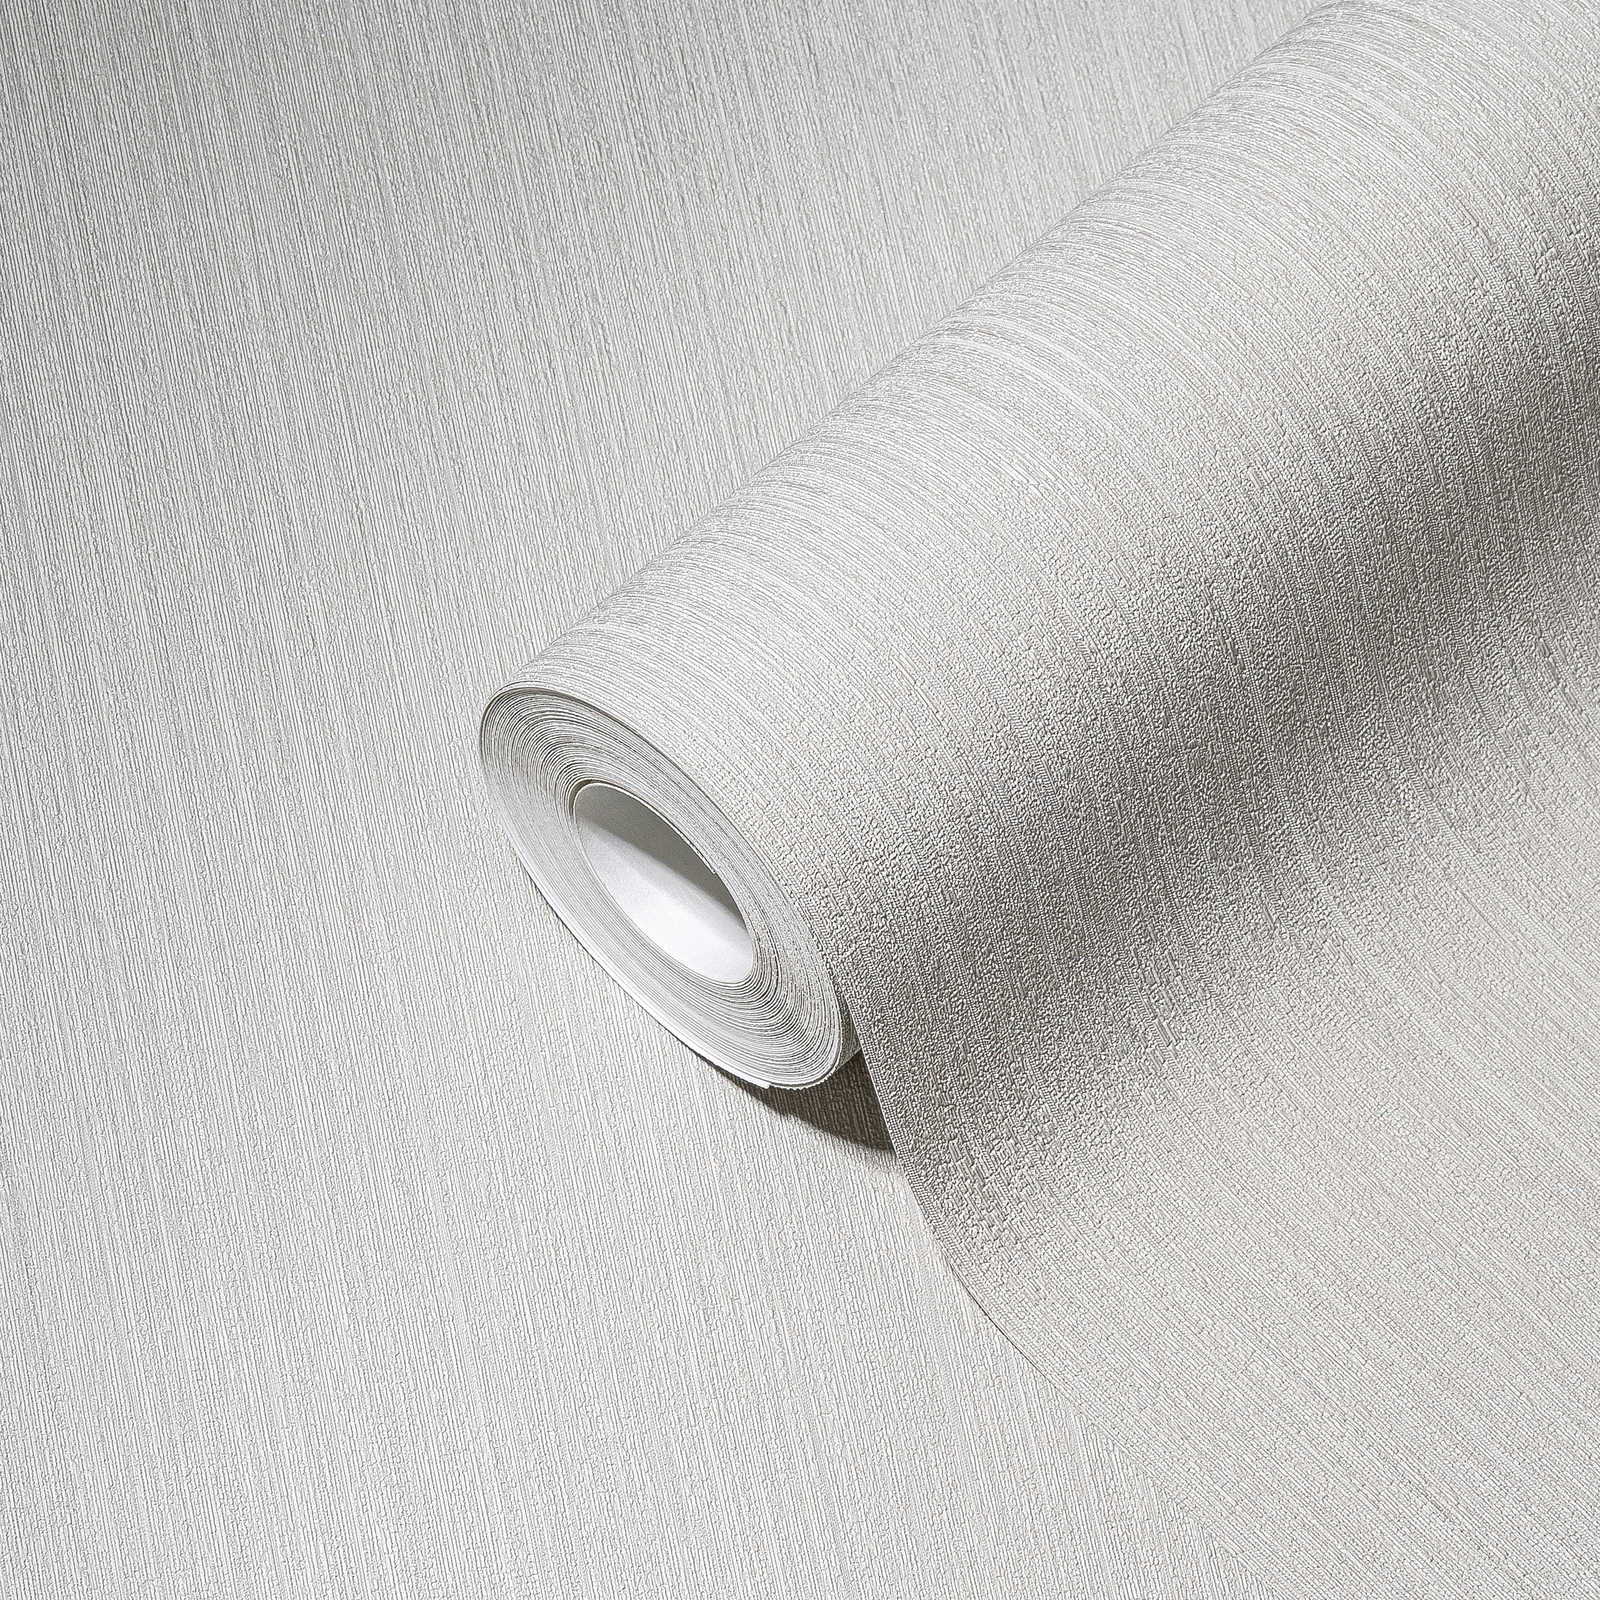             Light grey non-woven wallpaper with sturkut pattern, plain & satin
        